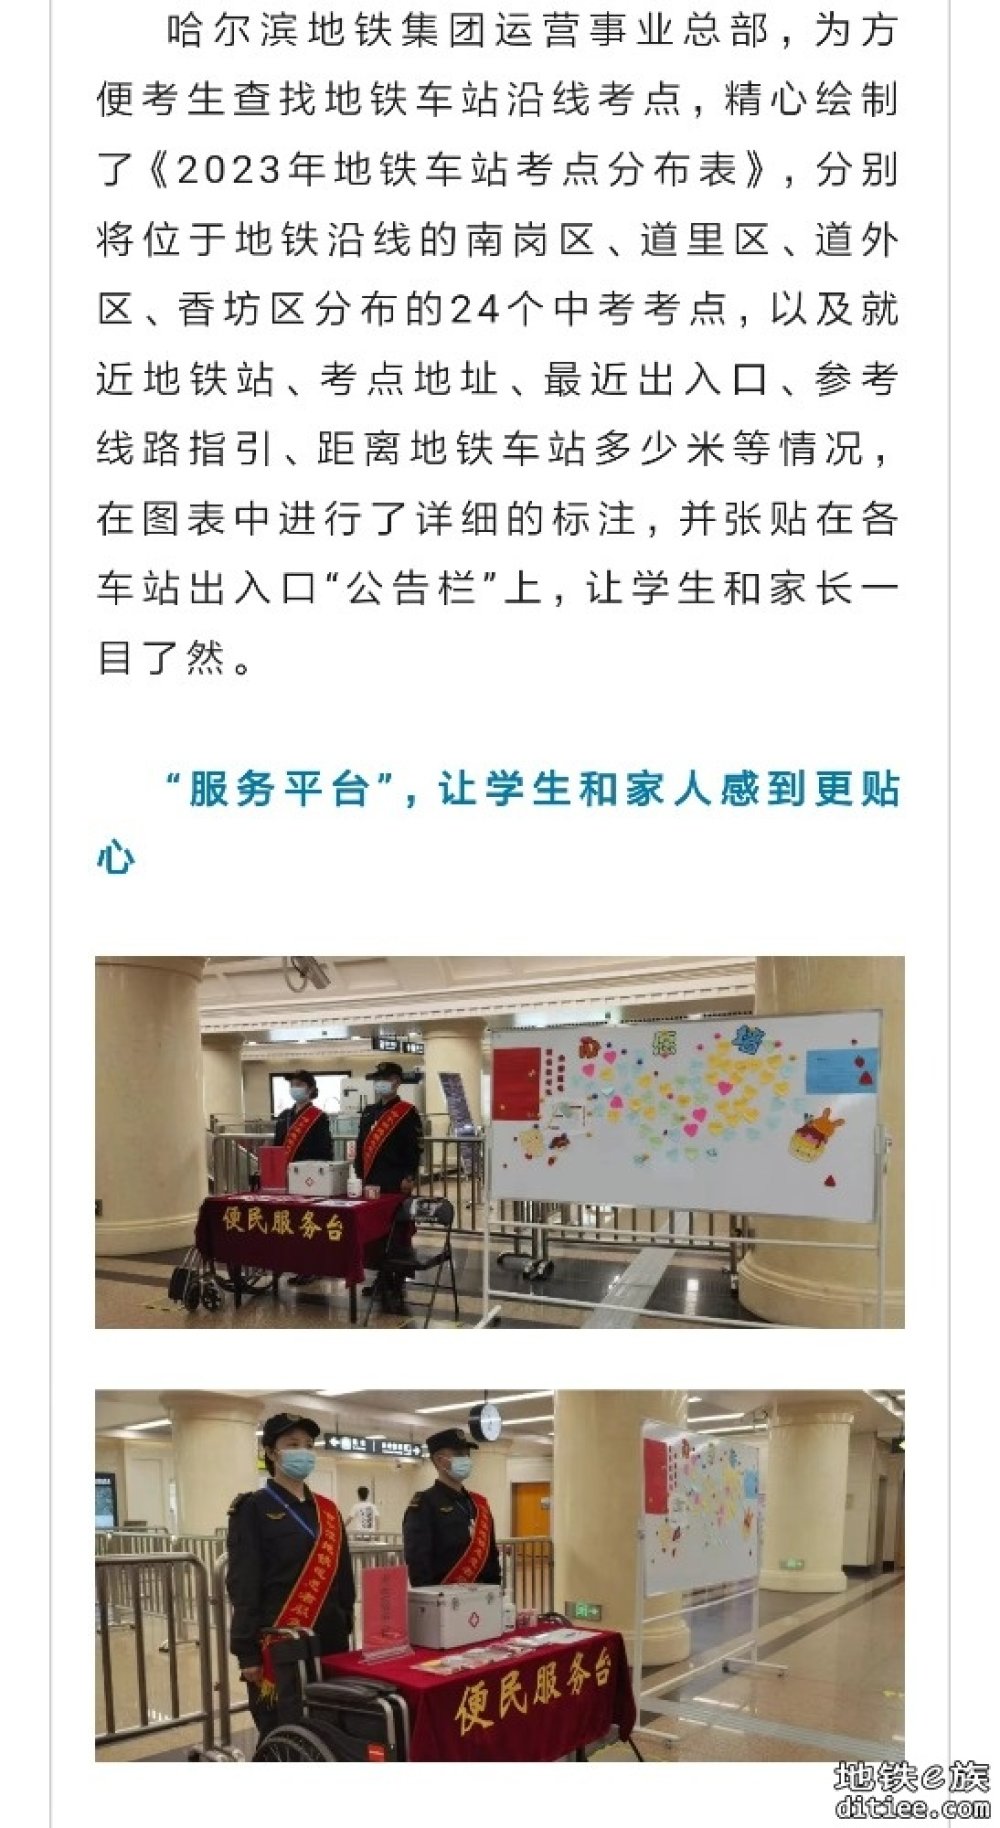 “助力中考 ”地铁在行动——哈尔滨地铁为中考考生提供免费乘车服务